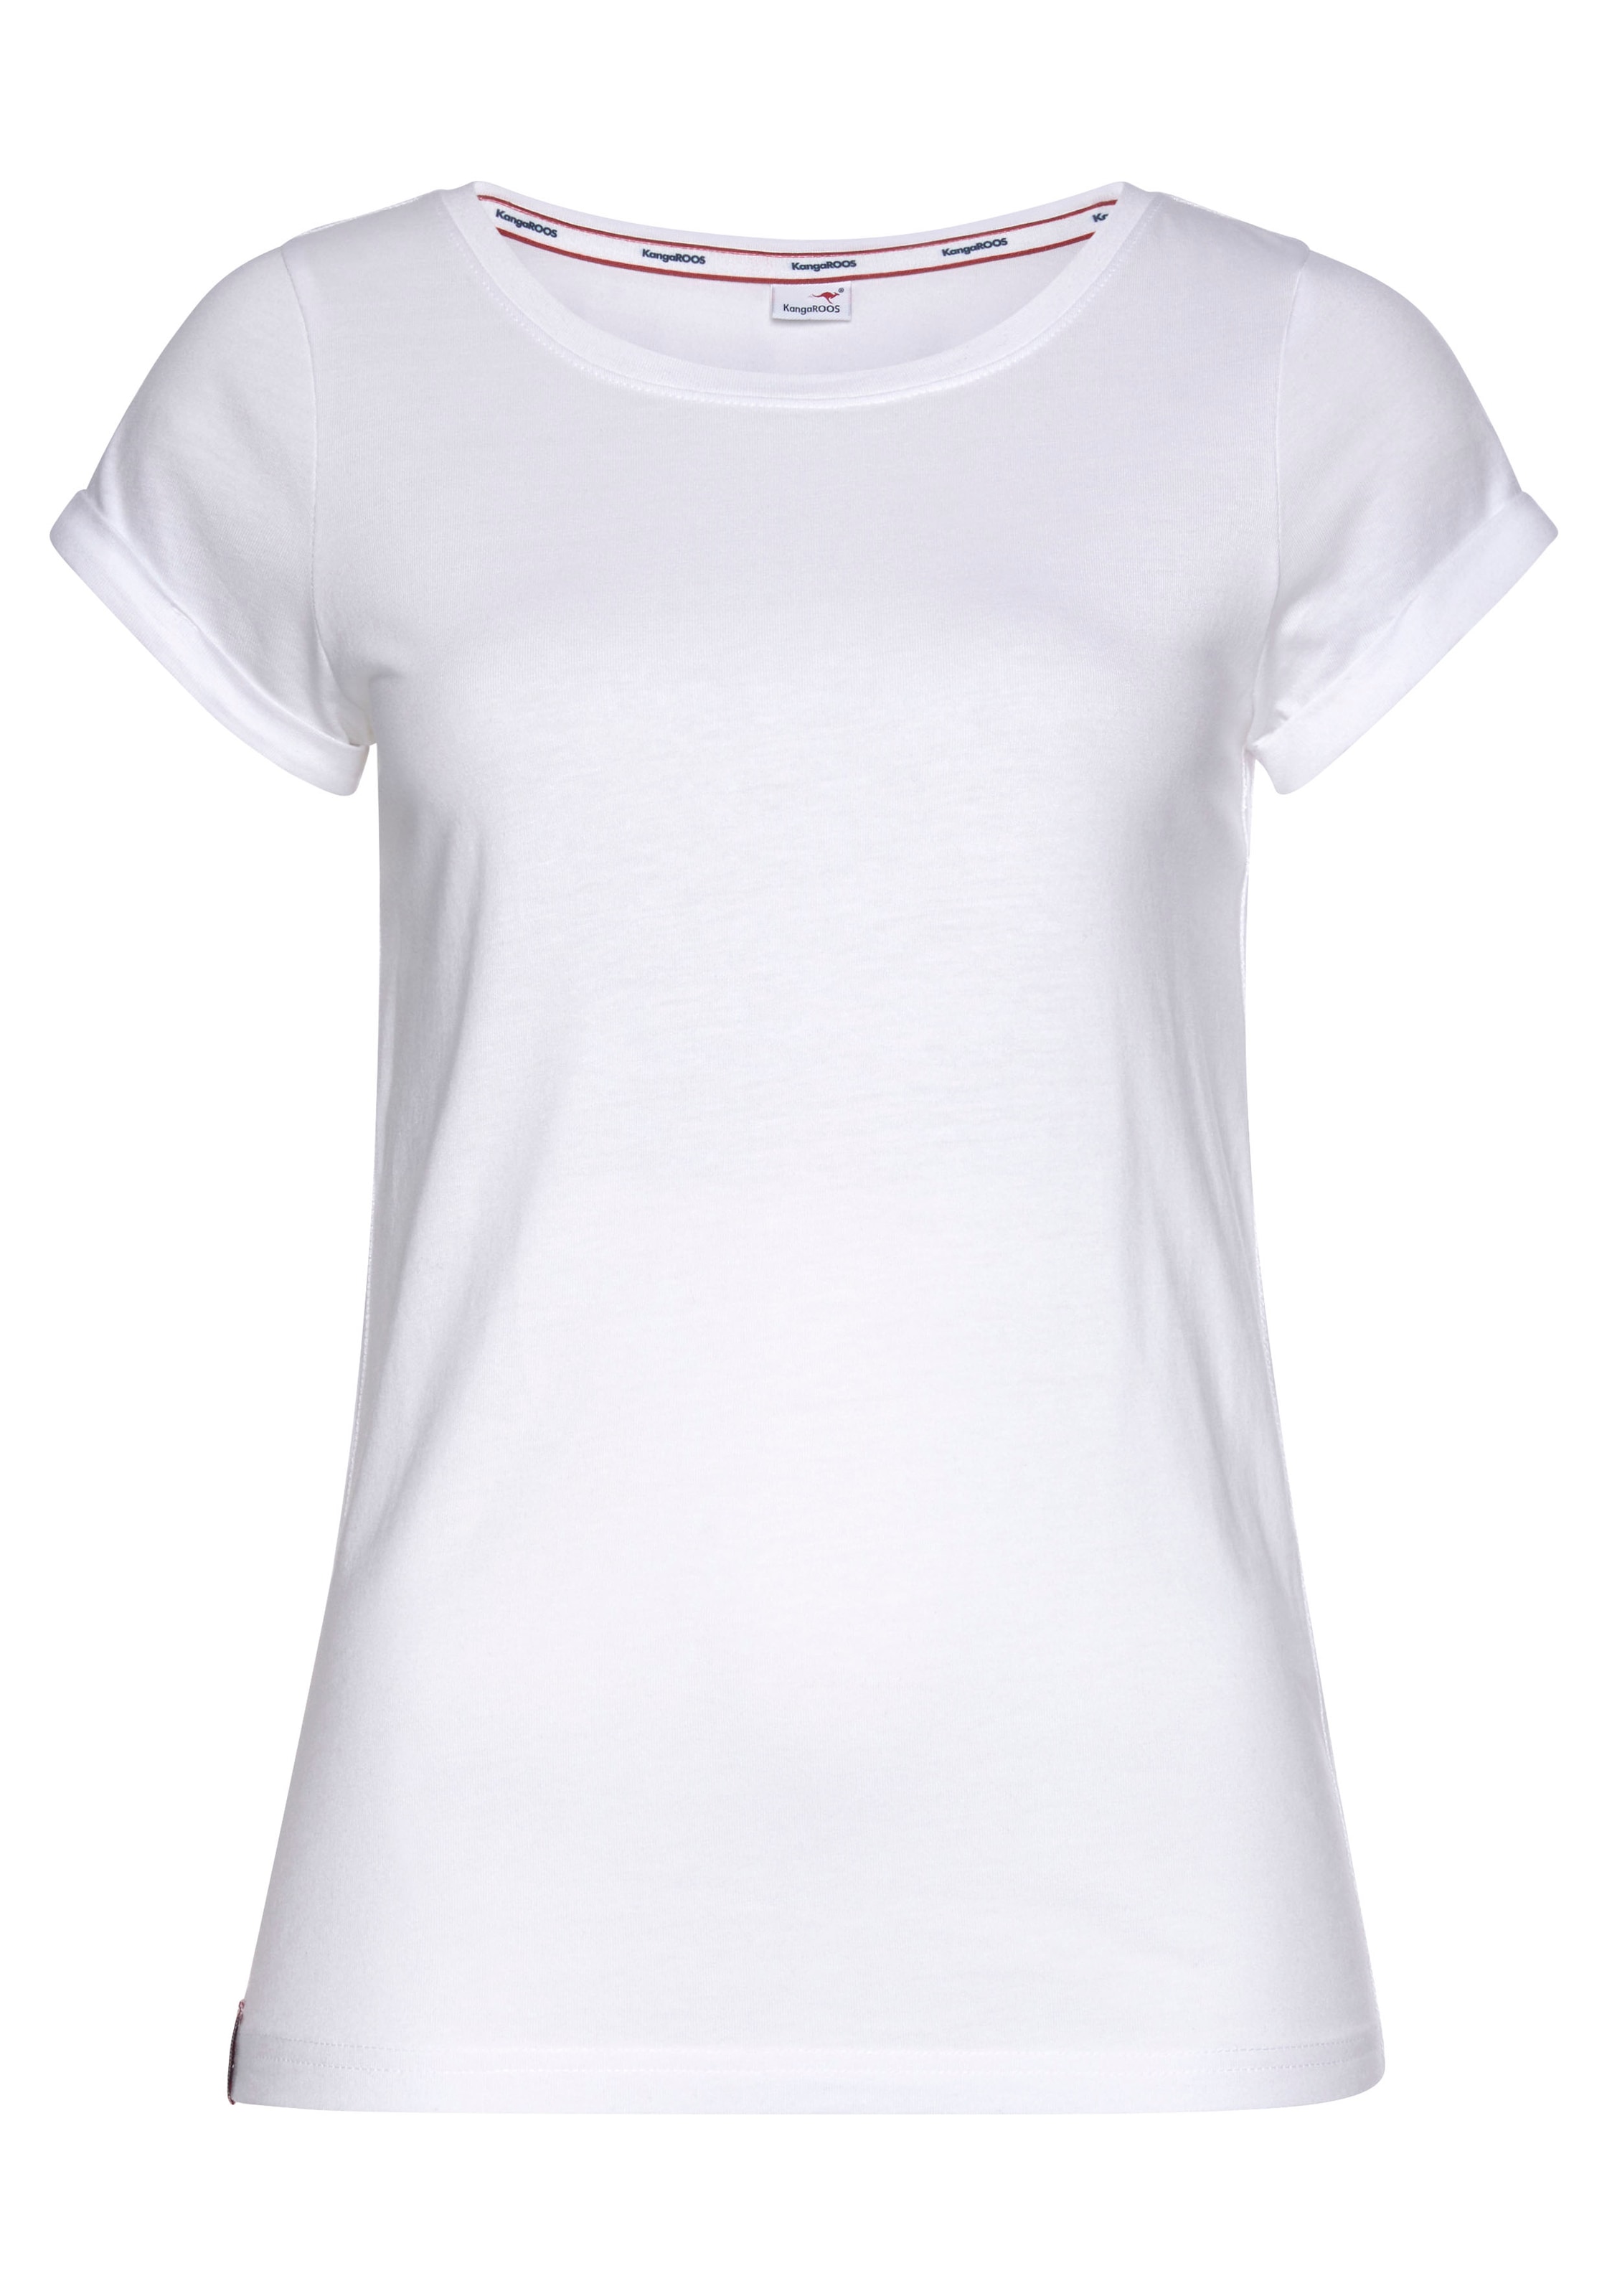 KangaROOS T-Shirt, mit aufgekrempelten Ärmelsaum